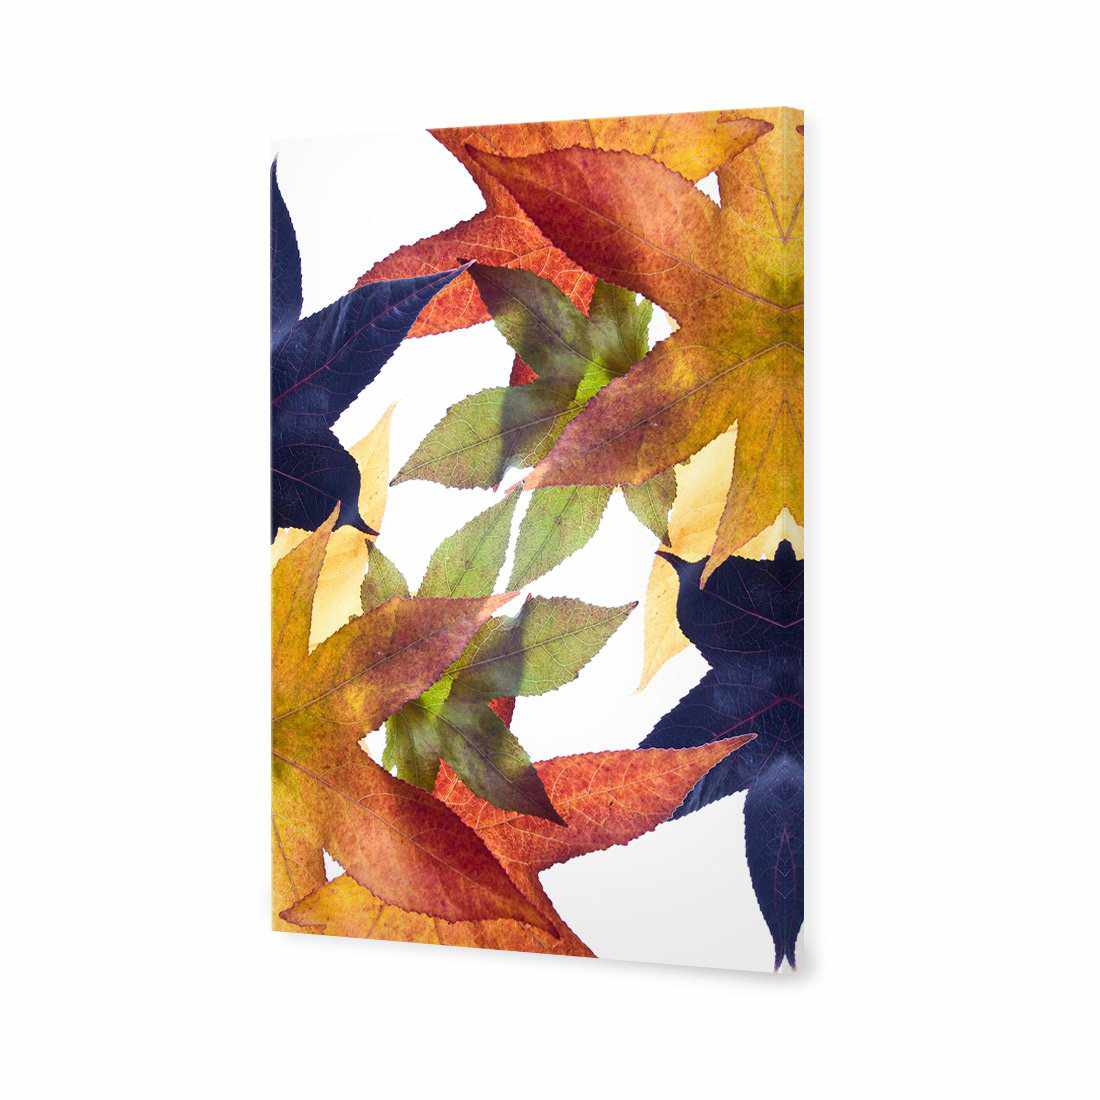 Leaf Kaleidoscope Canvas Art-Canvas-Wall Art Designs-45x30cm-Canvas - No Frame-Wall Art Designs